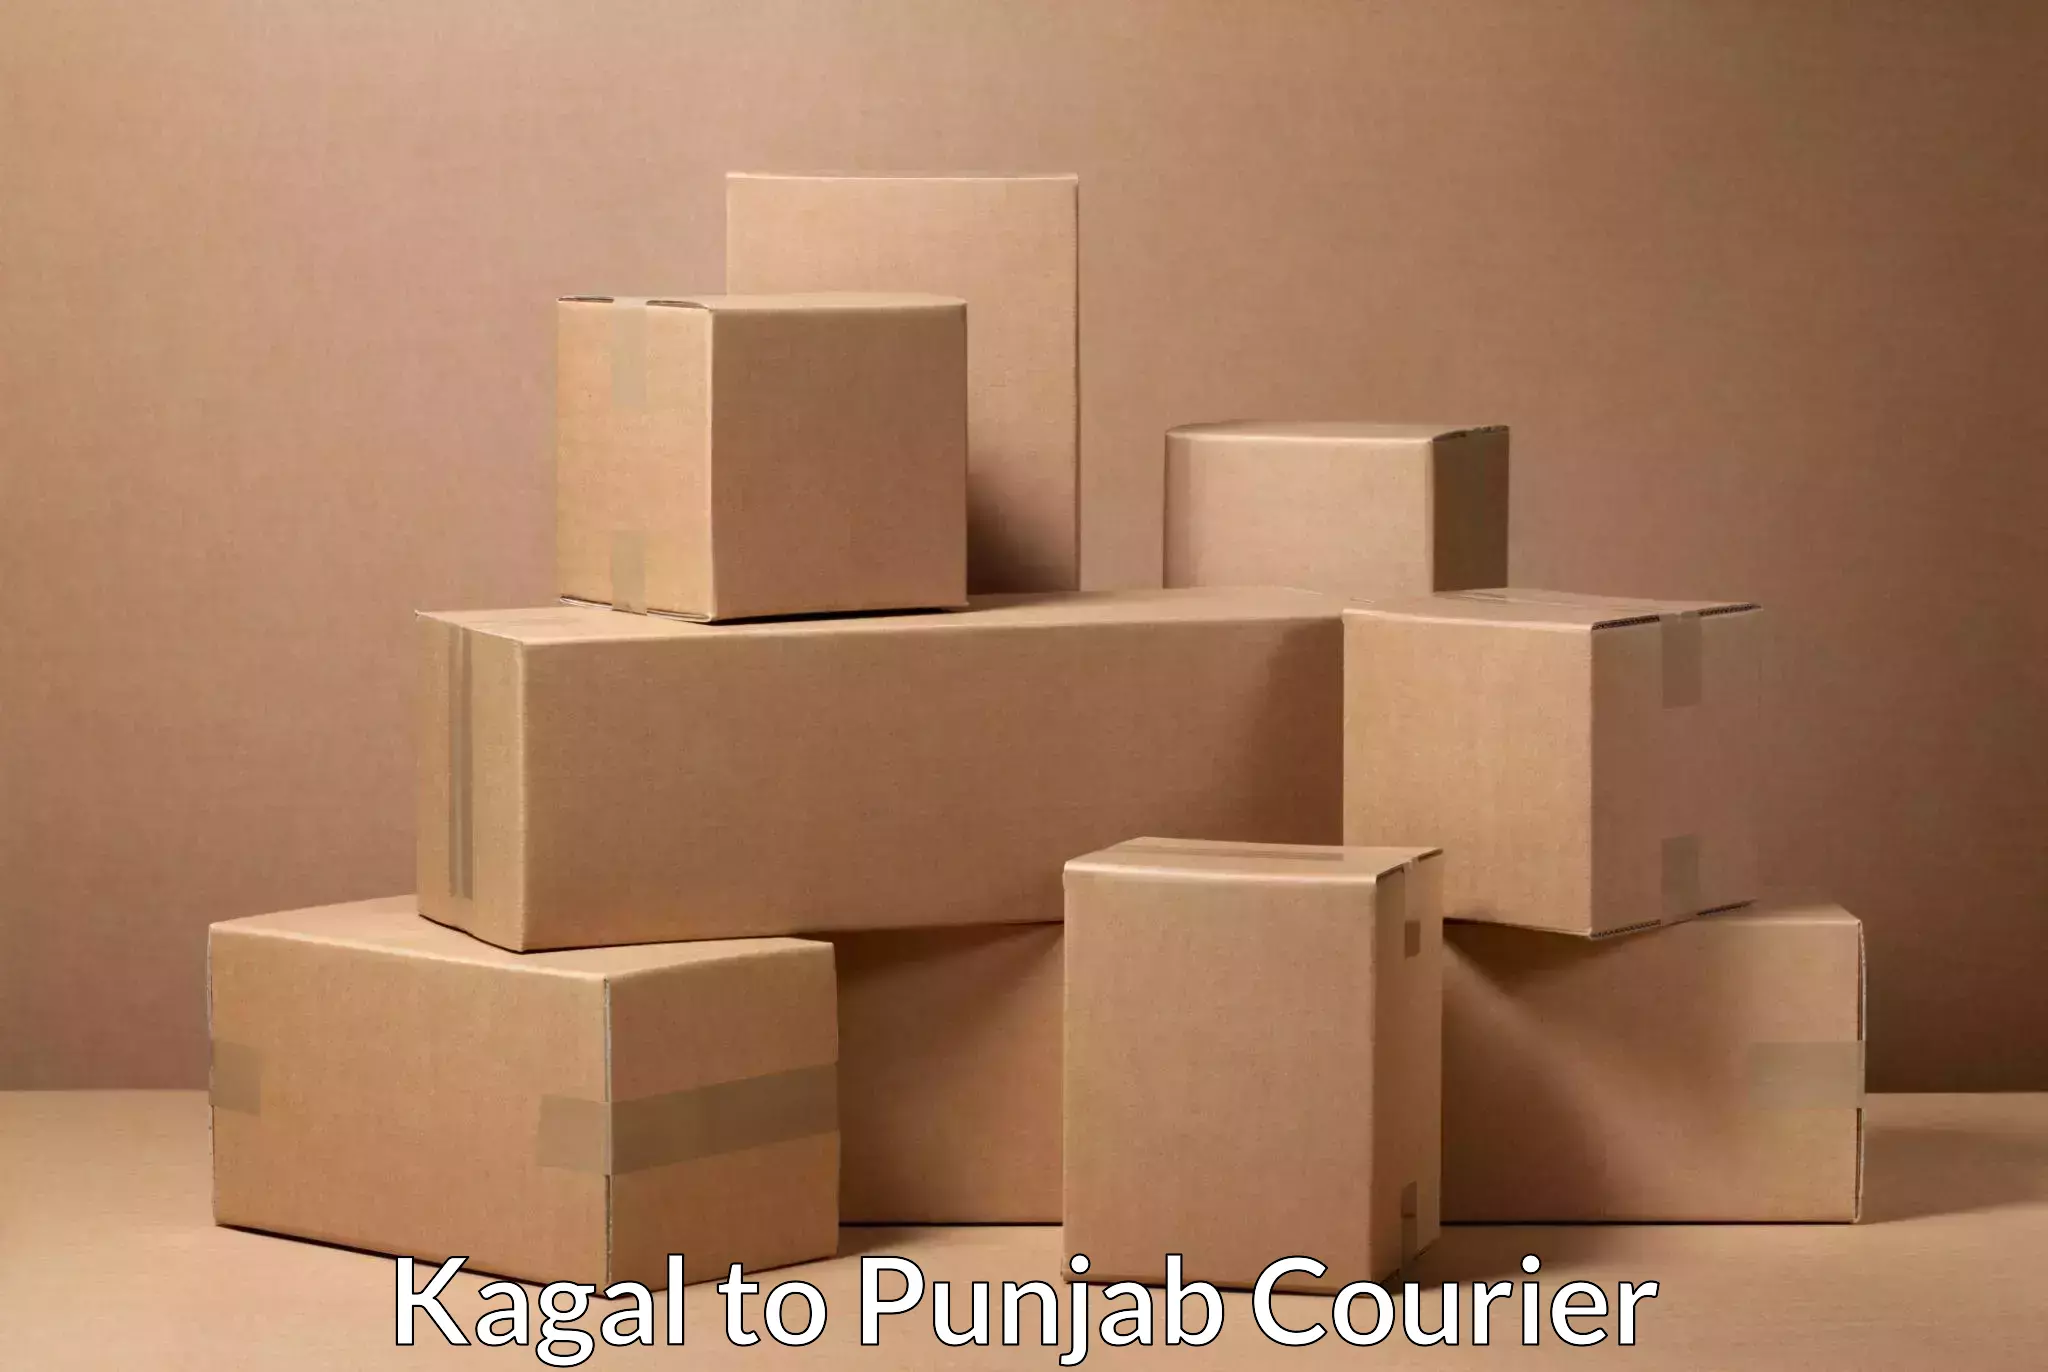 Package tracking Kagal to Punjab